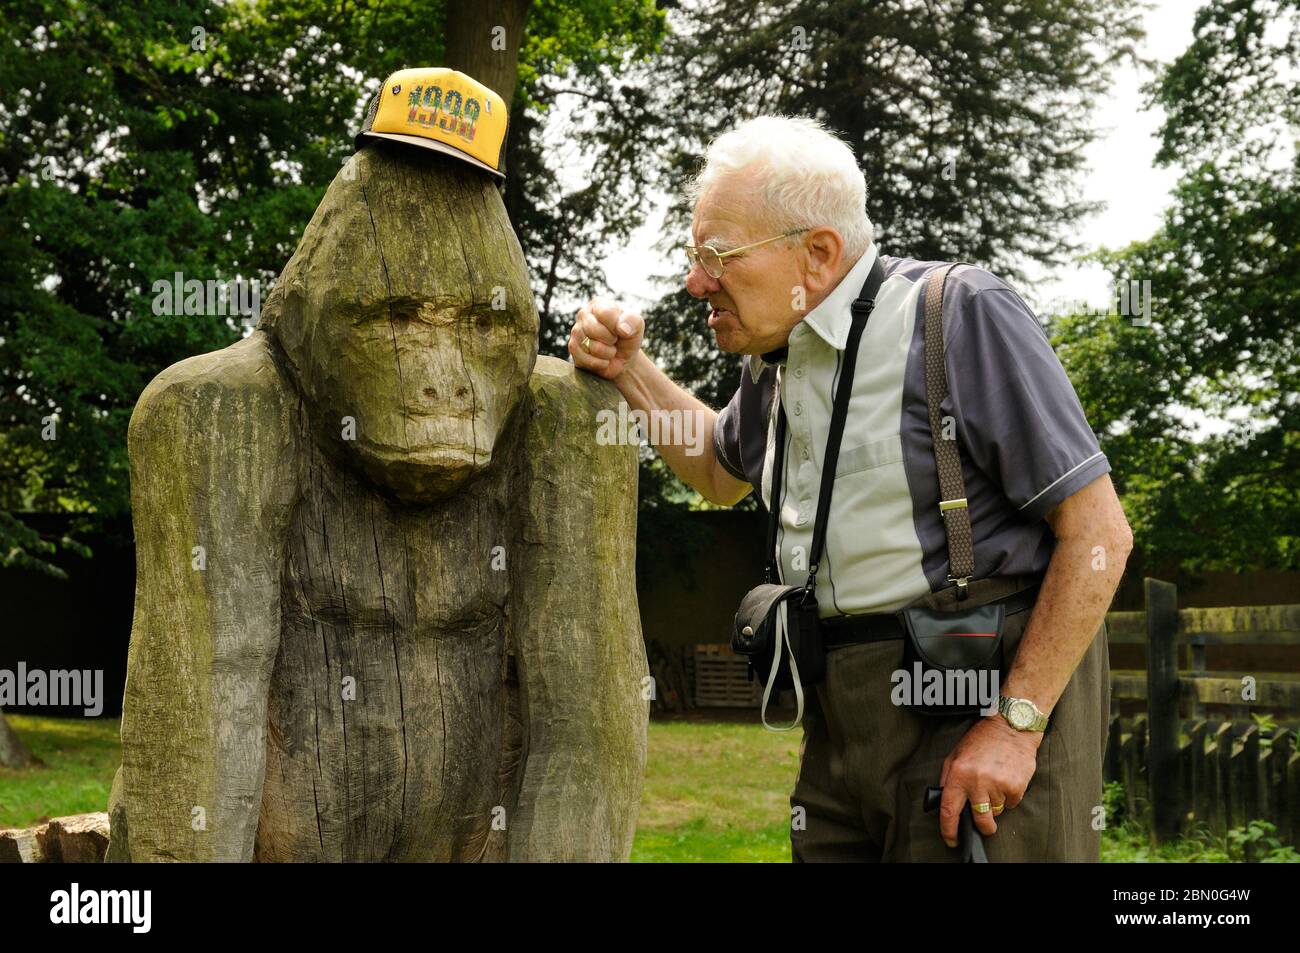 Homme âgé s'amusant avec sa casquette de baseball et un gorille en bois sculpté au parc de campagne d'Elsham Hall, Lincolnshire, Angleterre Banque D'Images